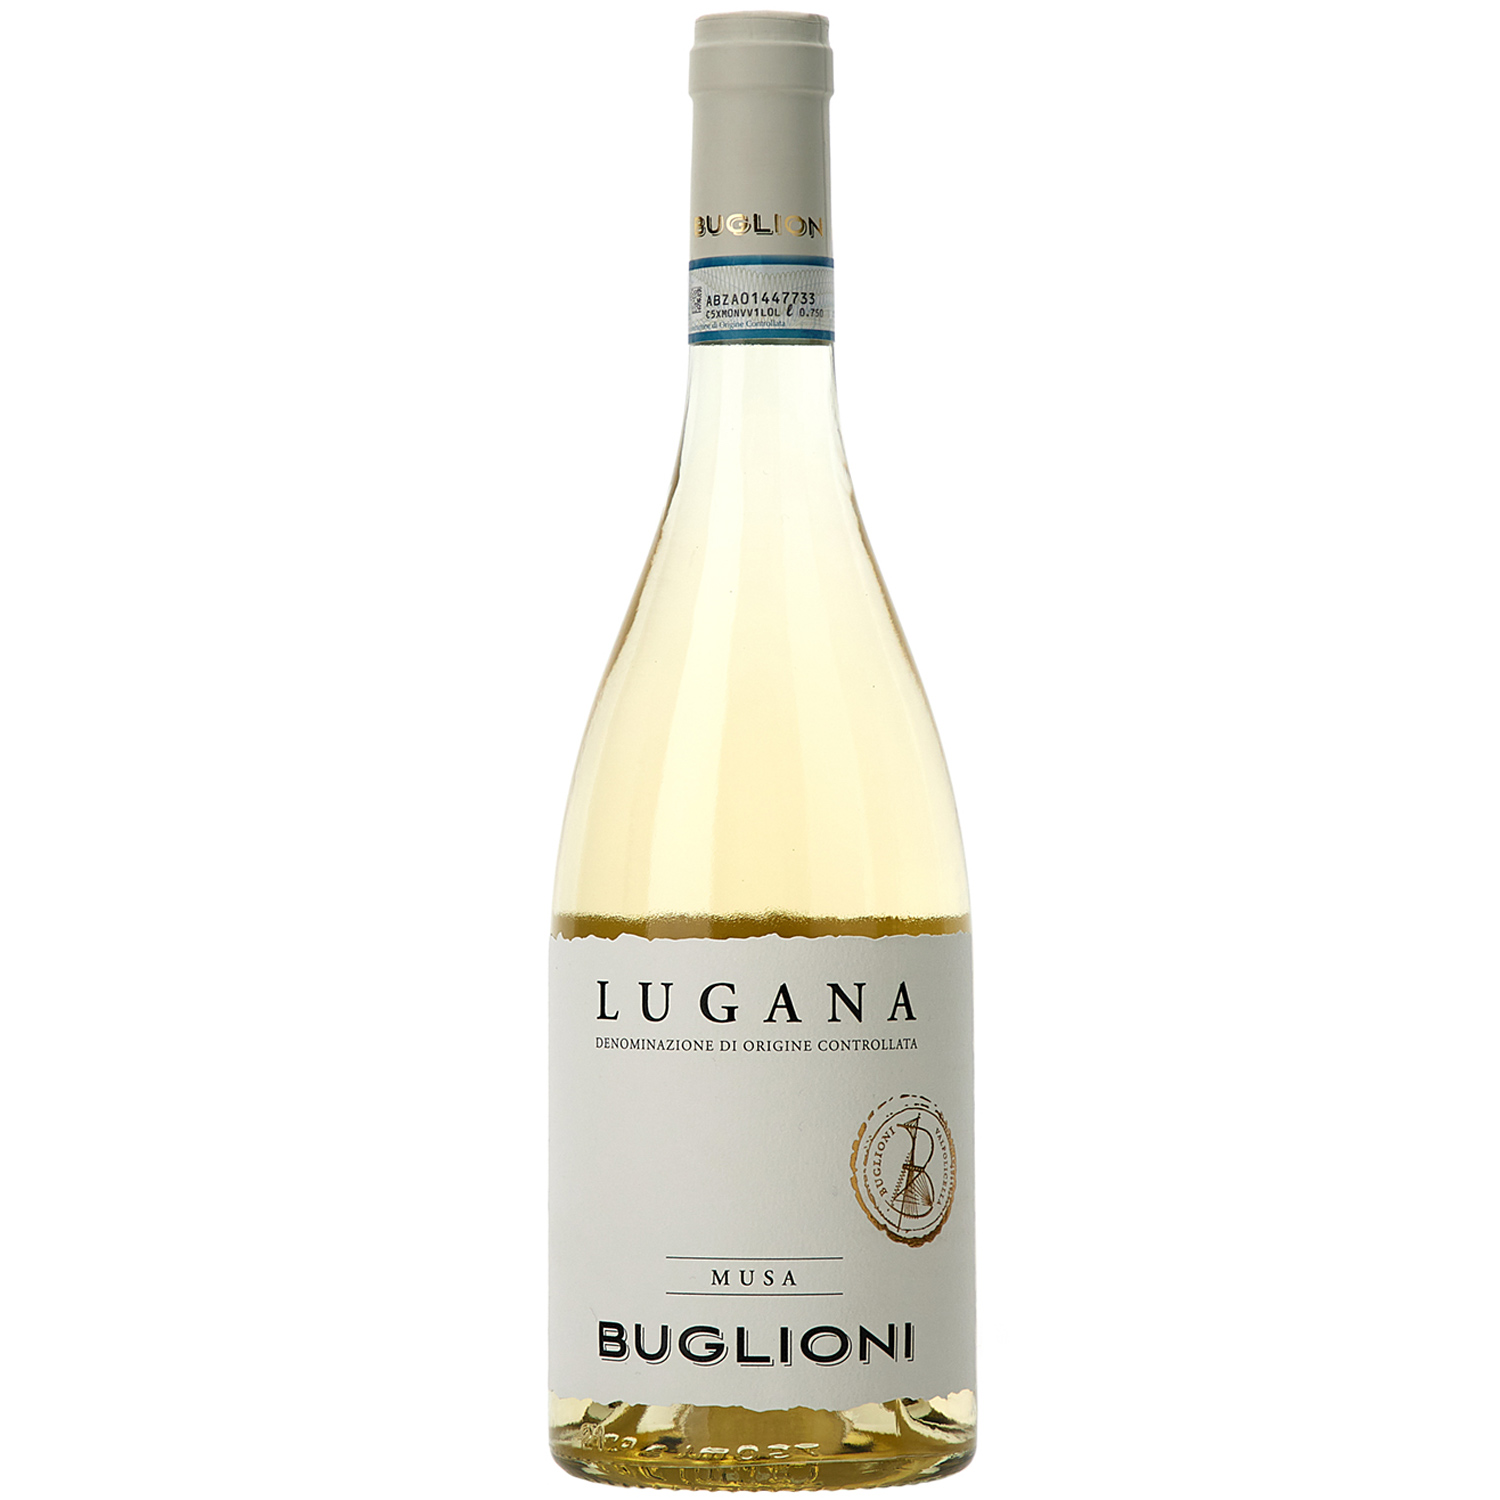 Italienischer Weißwein Buglioni Lugana Musa 2019